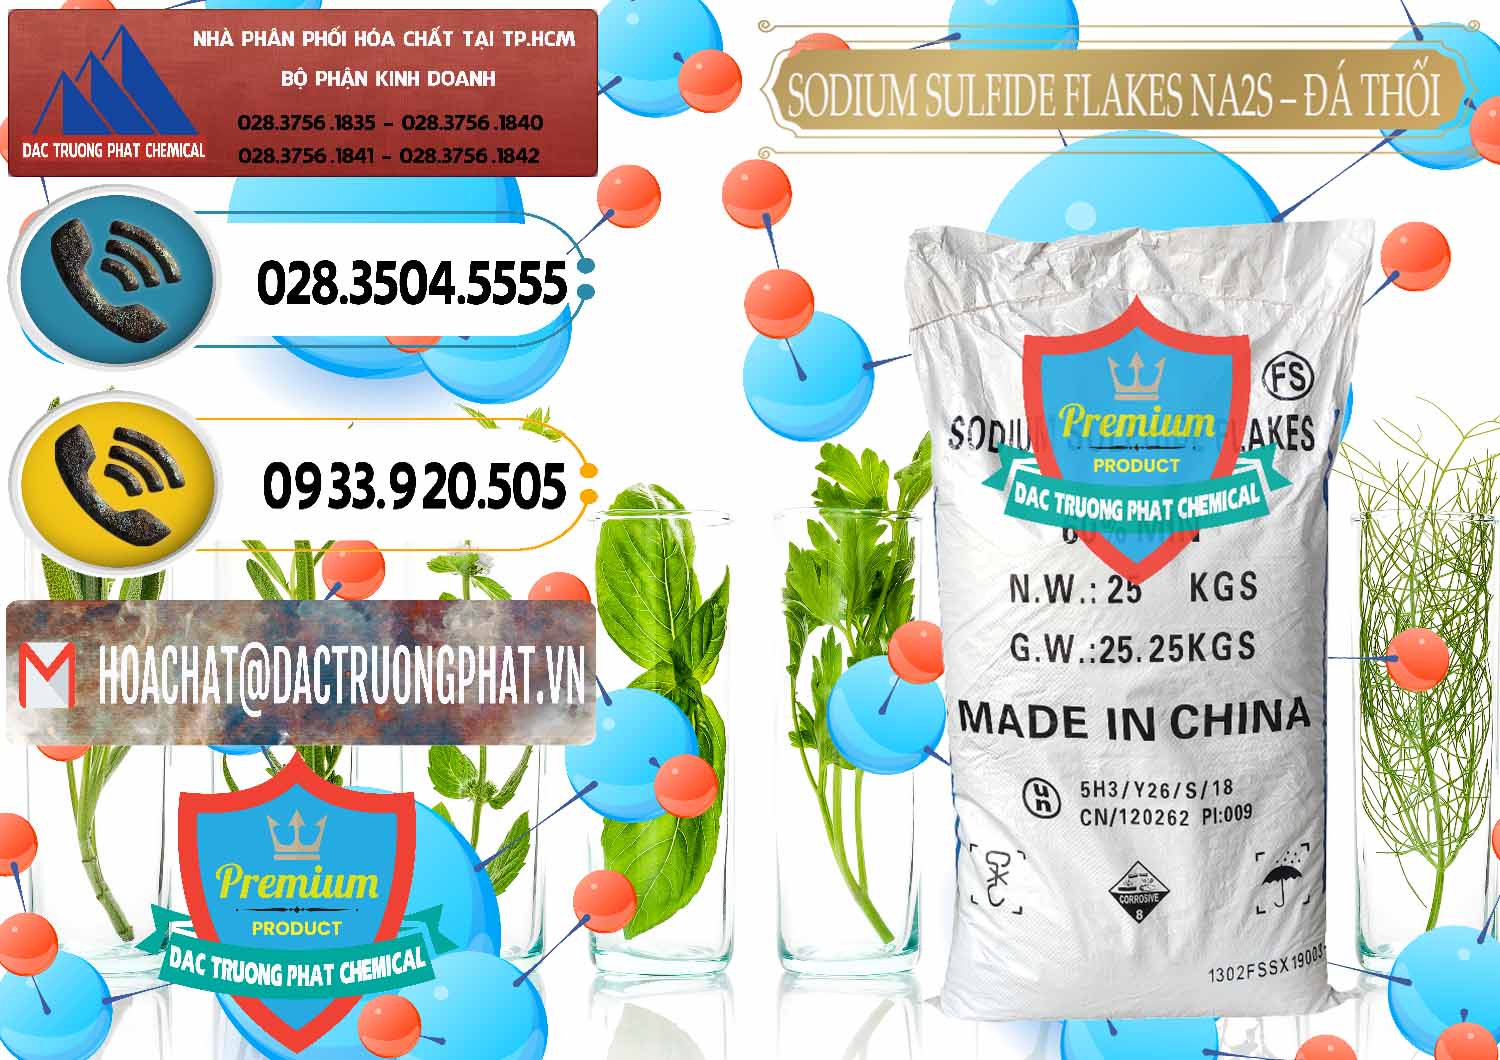 Nơi chuyên nhập khẩu - bán Sodium Sulfide Flakes NA2S – Đá Thối Đỏ Trung Quốc China - 0150 - Cty chuyên bán - cung cấp hóa chất tại TP.HCM - hoachatdetnhuom.vn